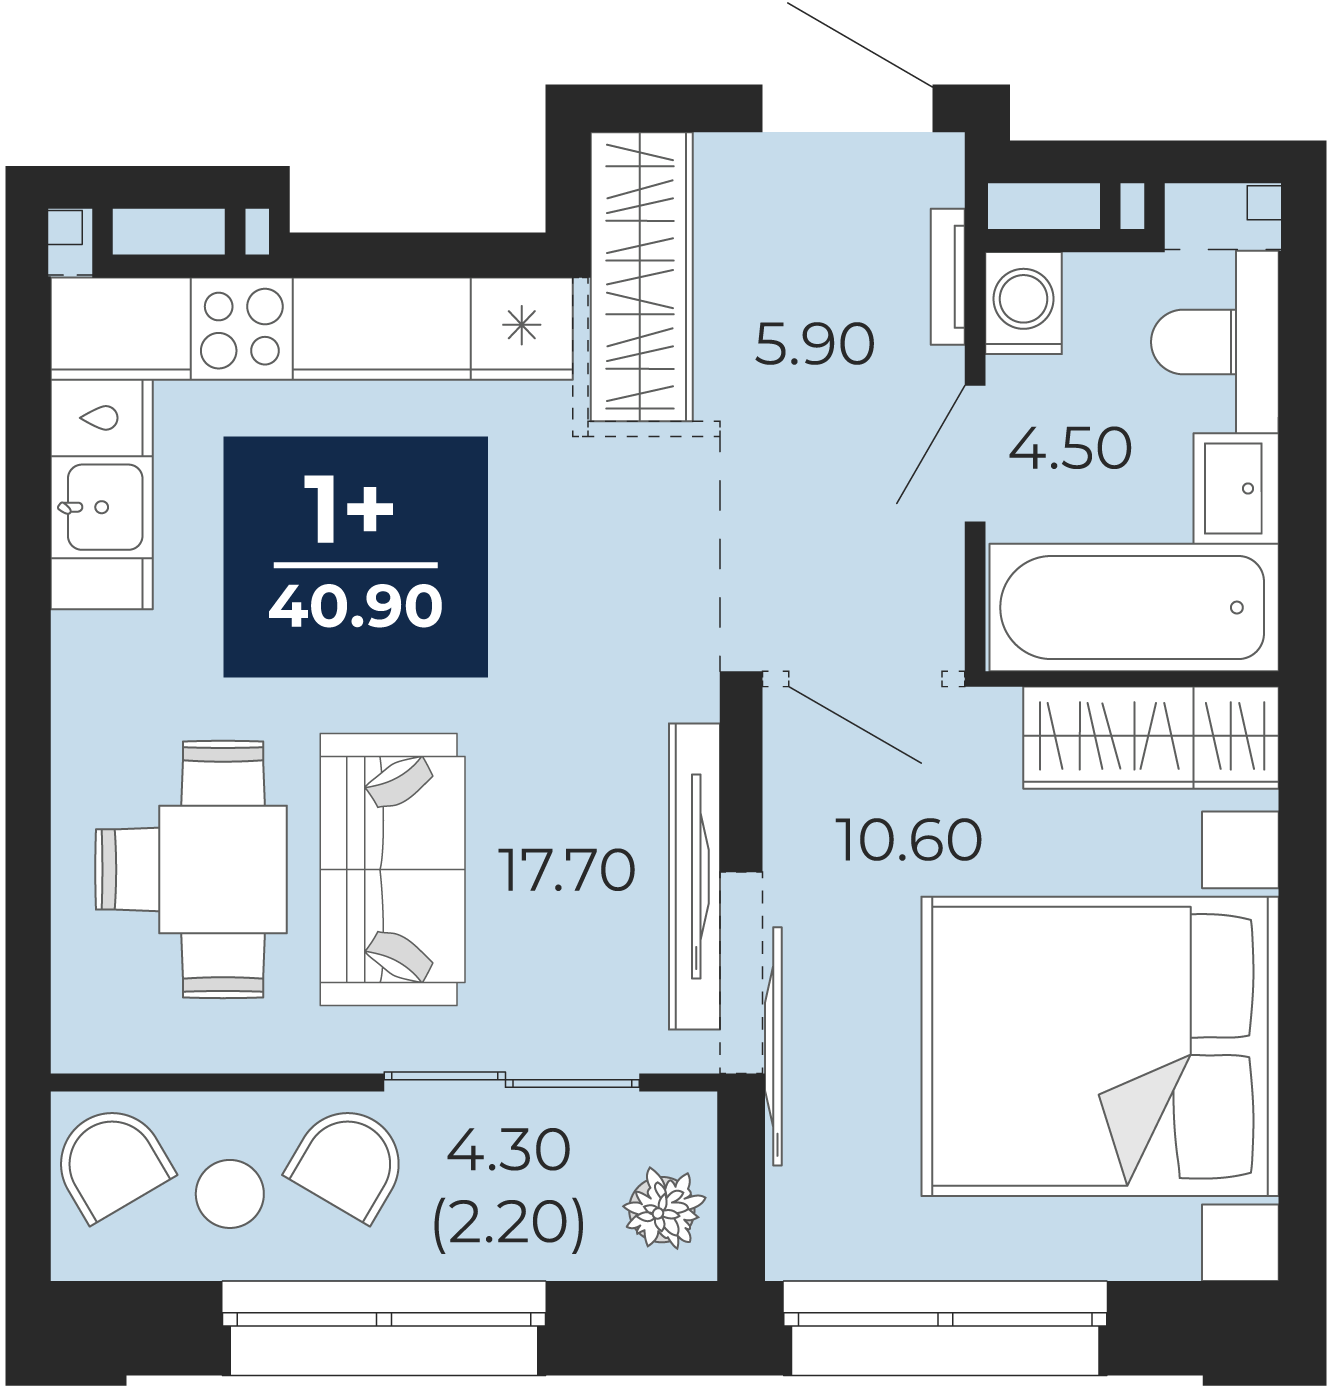 Квартира № 364, 1-комнатная, 40.9 кв. м, 3 этаж